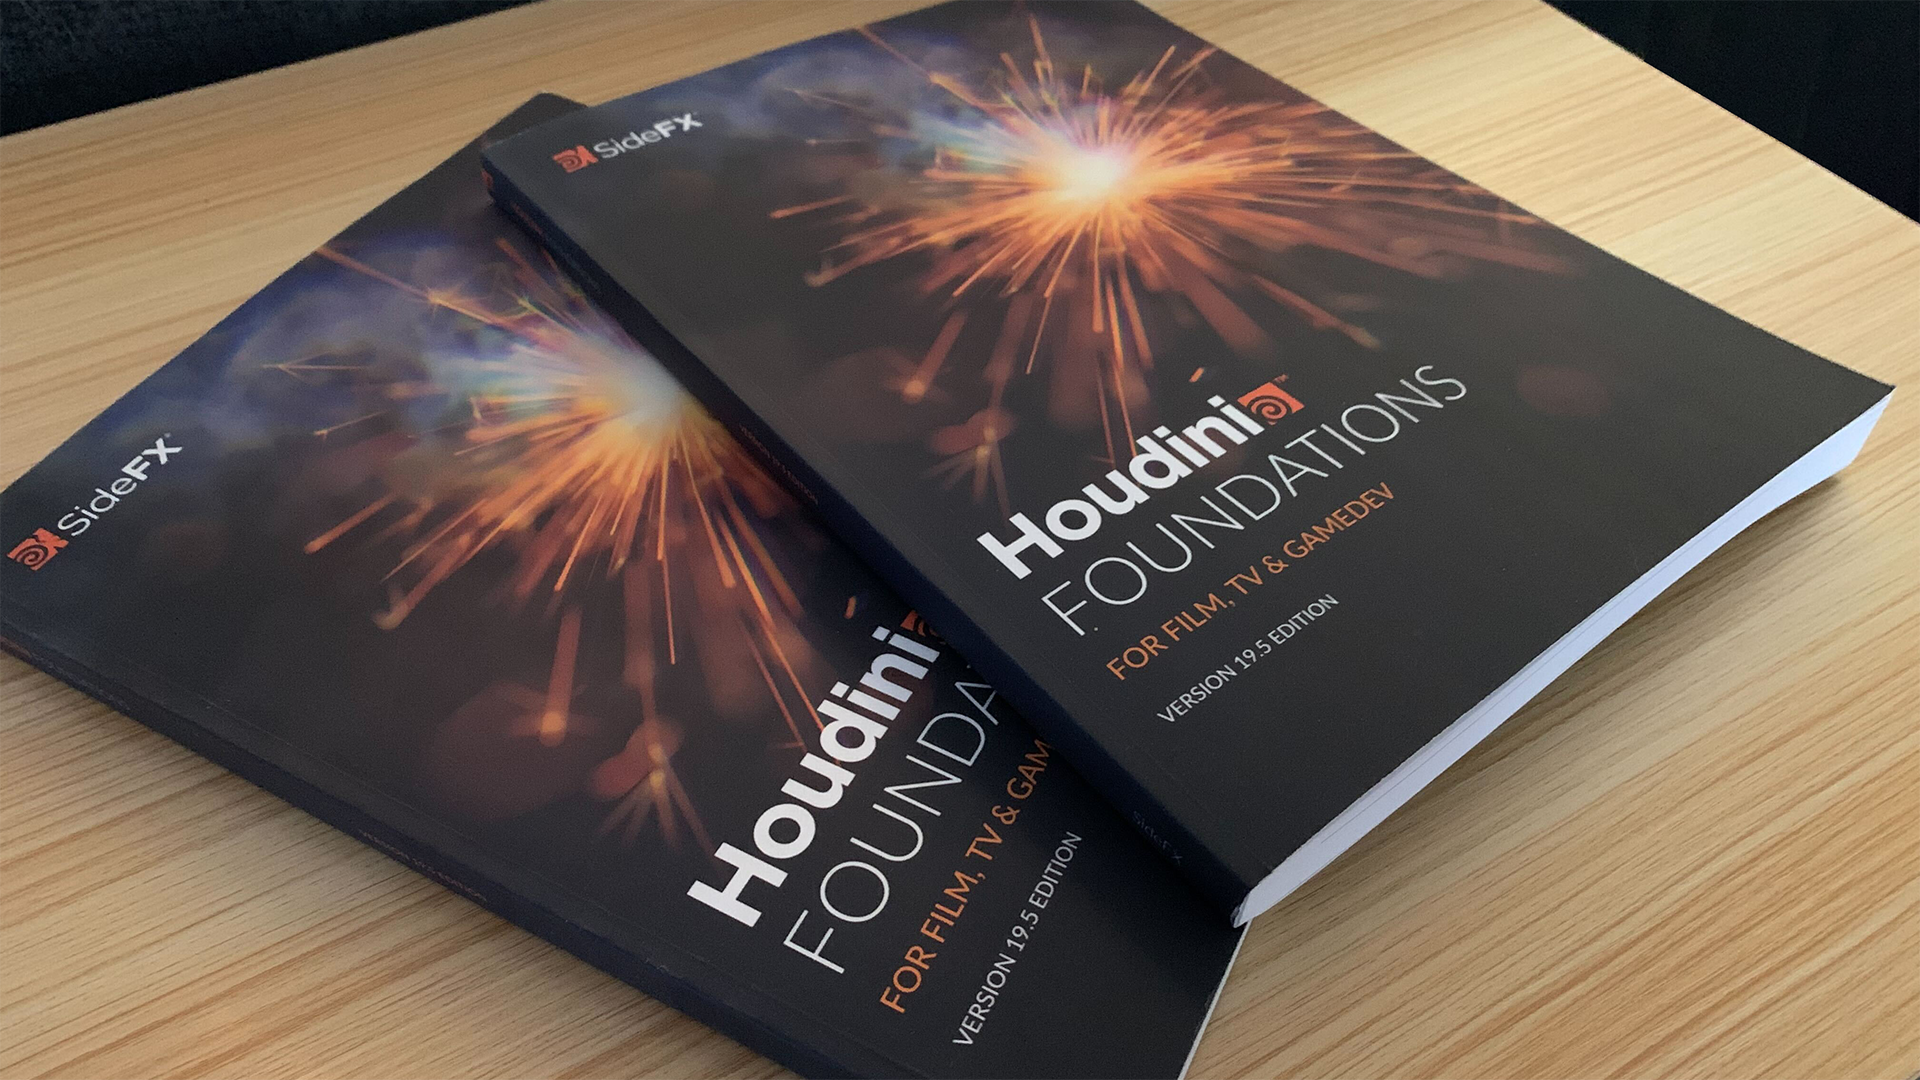 Foundations Book(Houdini官方PDF) 更新了双语版